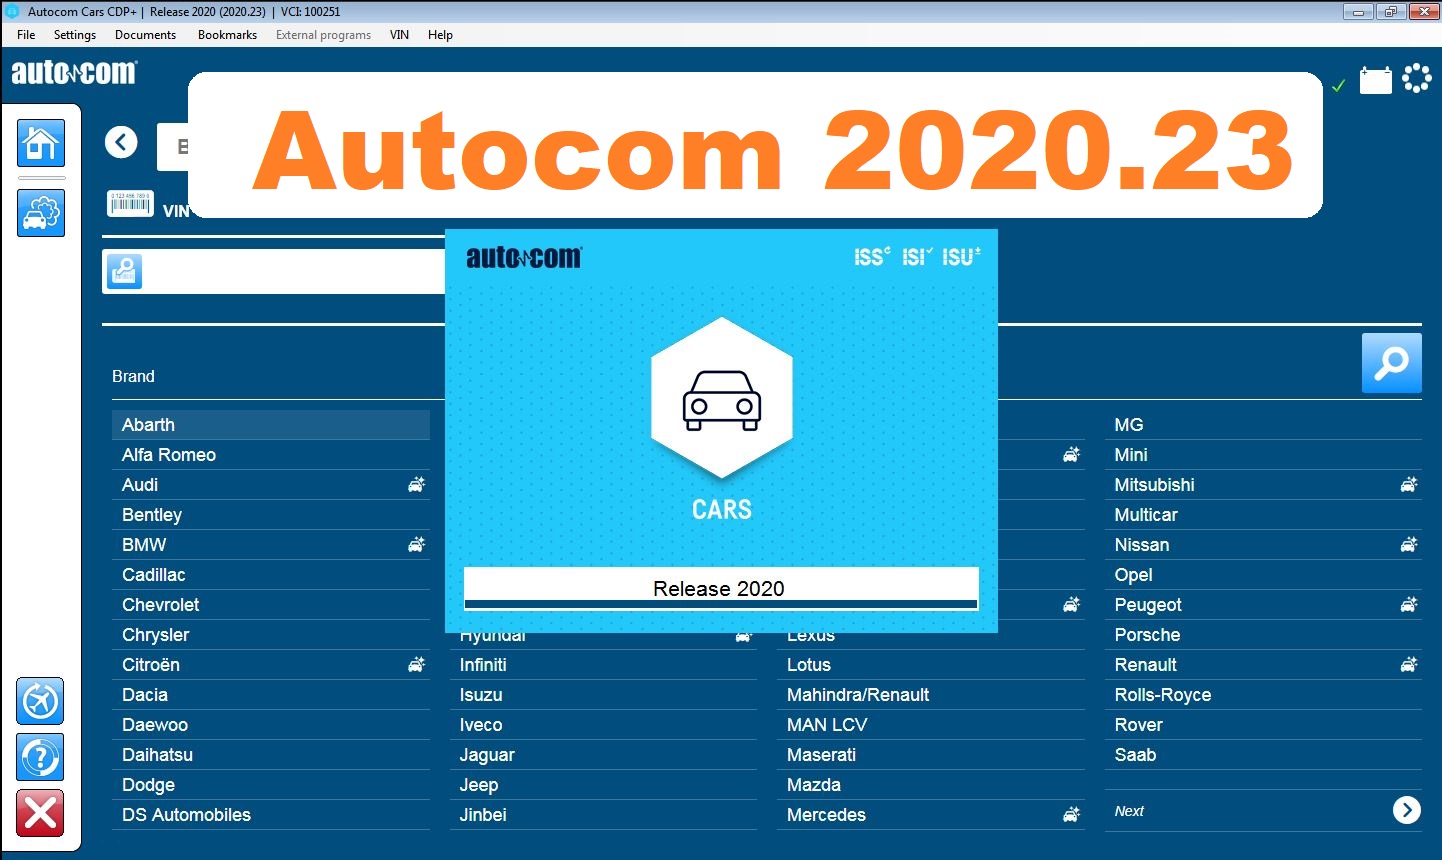 Autocom 2020.23 (Cars + Trucks) Software - native installation - tools4car